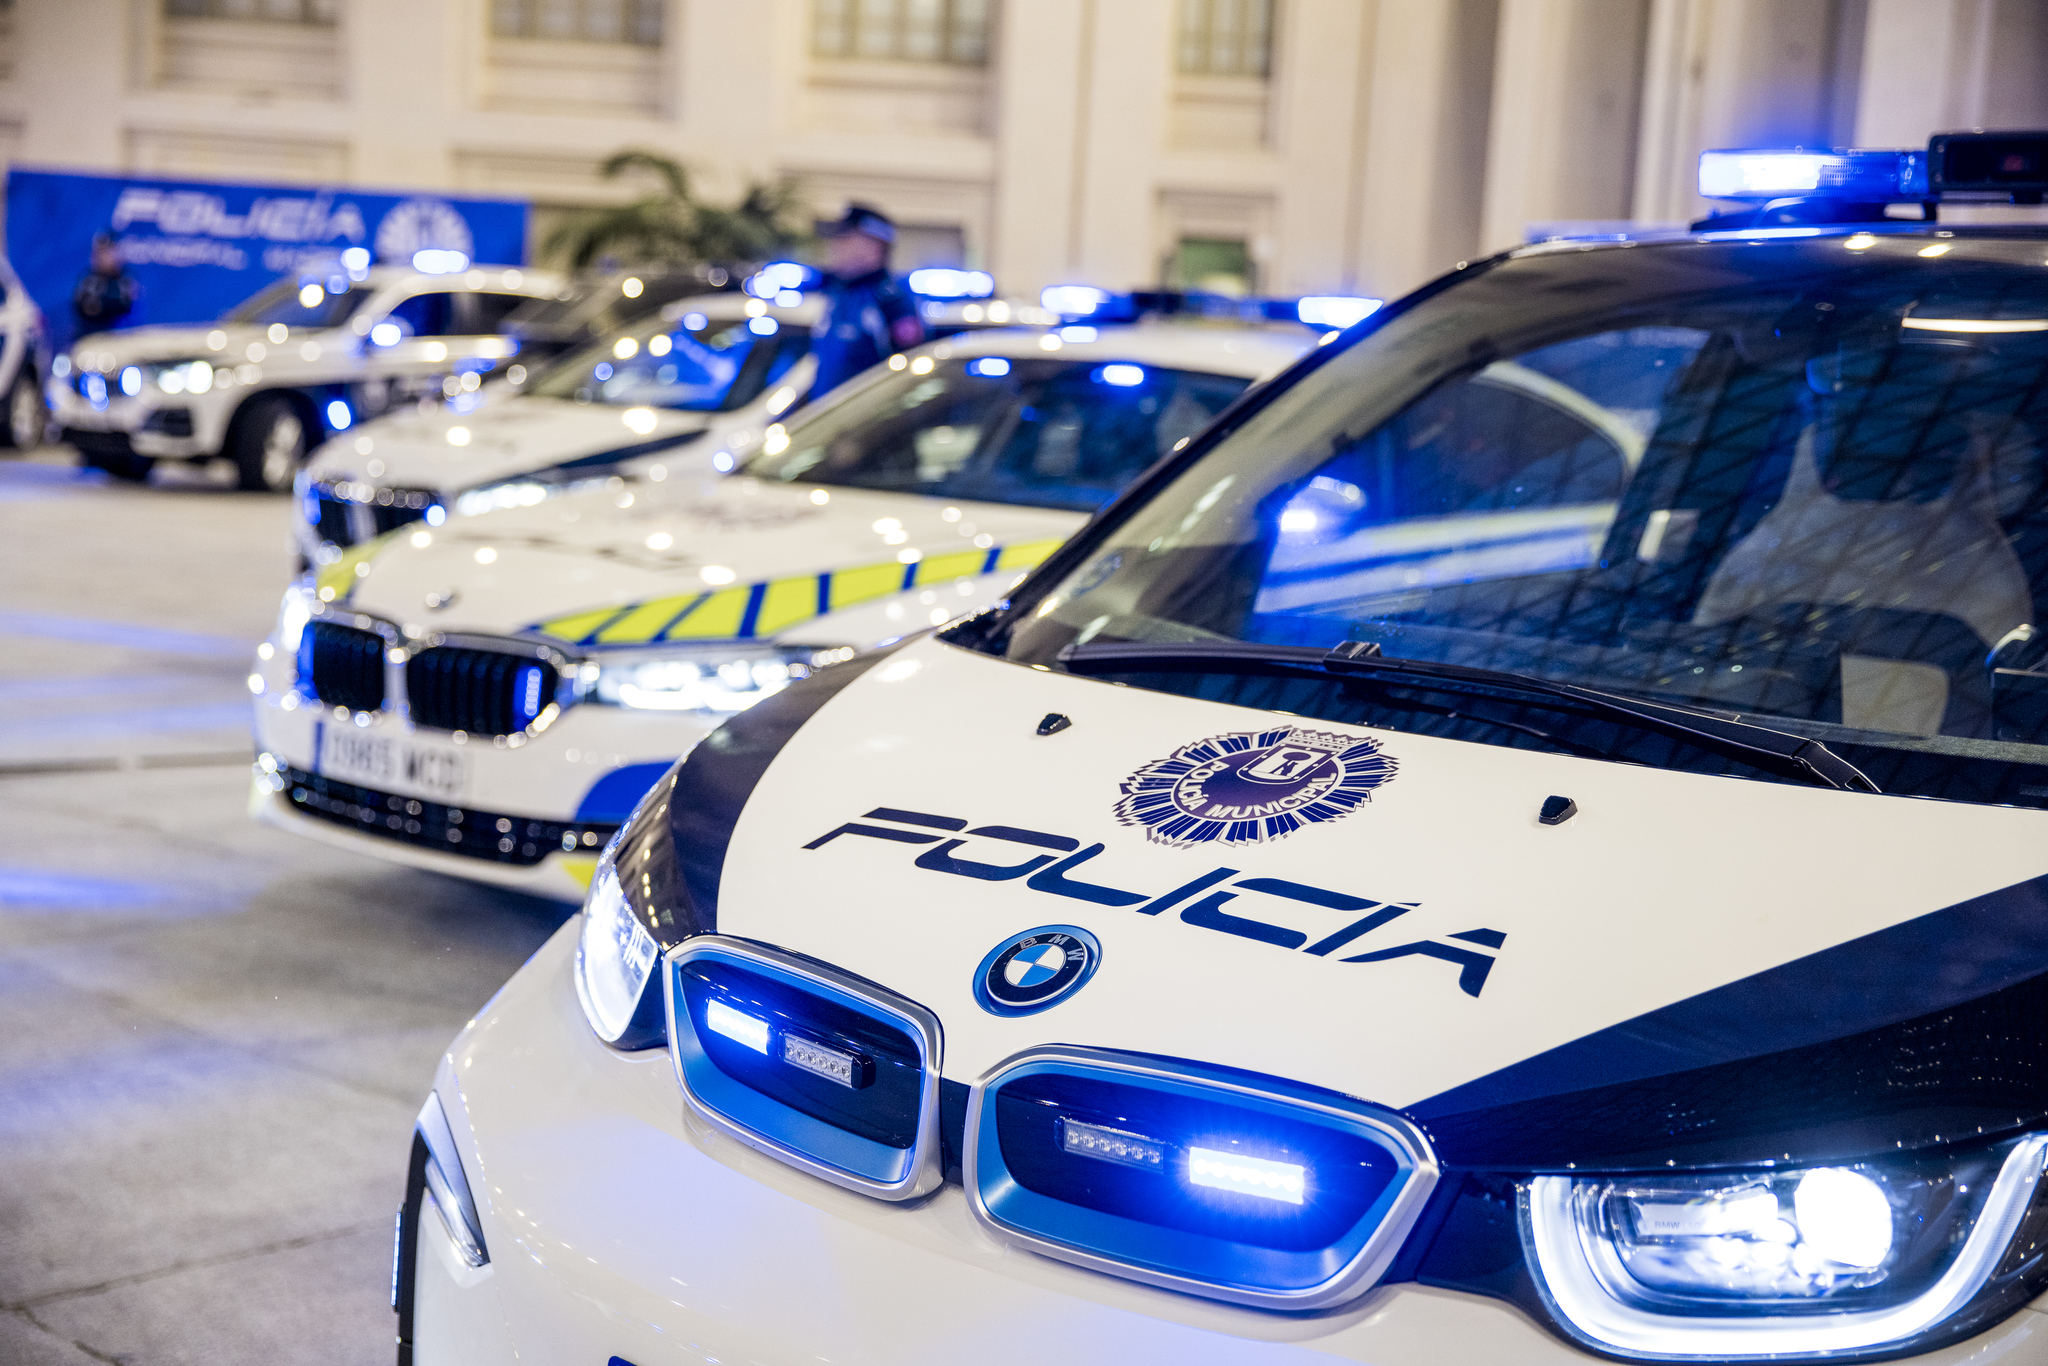 Durante los próximos cinco años los BMW de Policía patrullarán por las calles de Madrid. Se han adquirido en régimen de renting